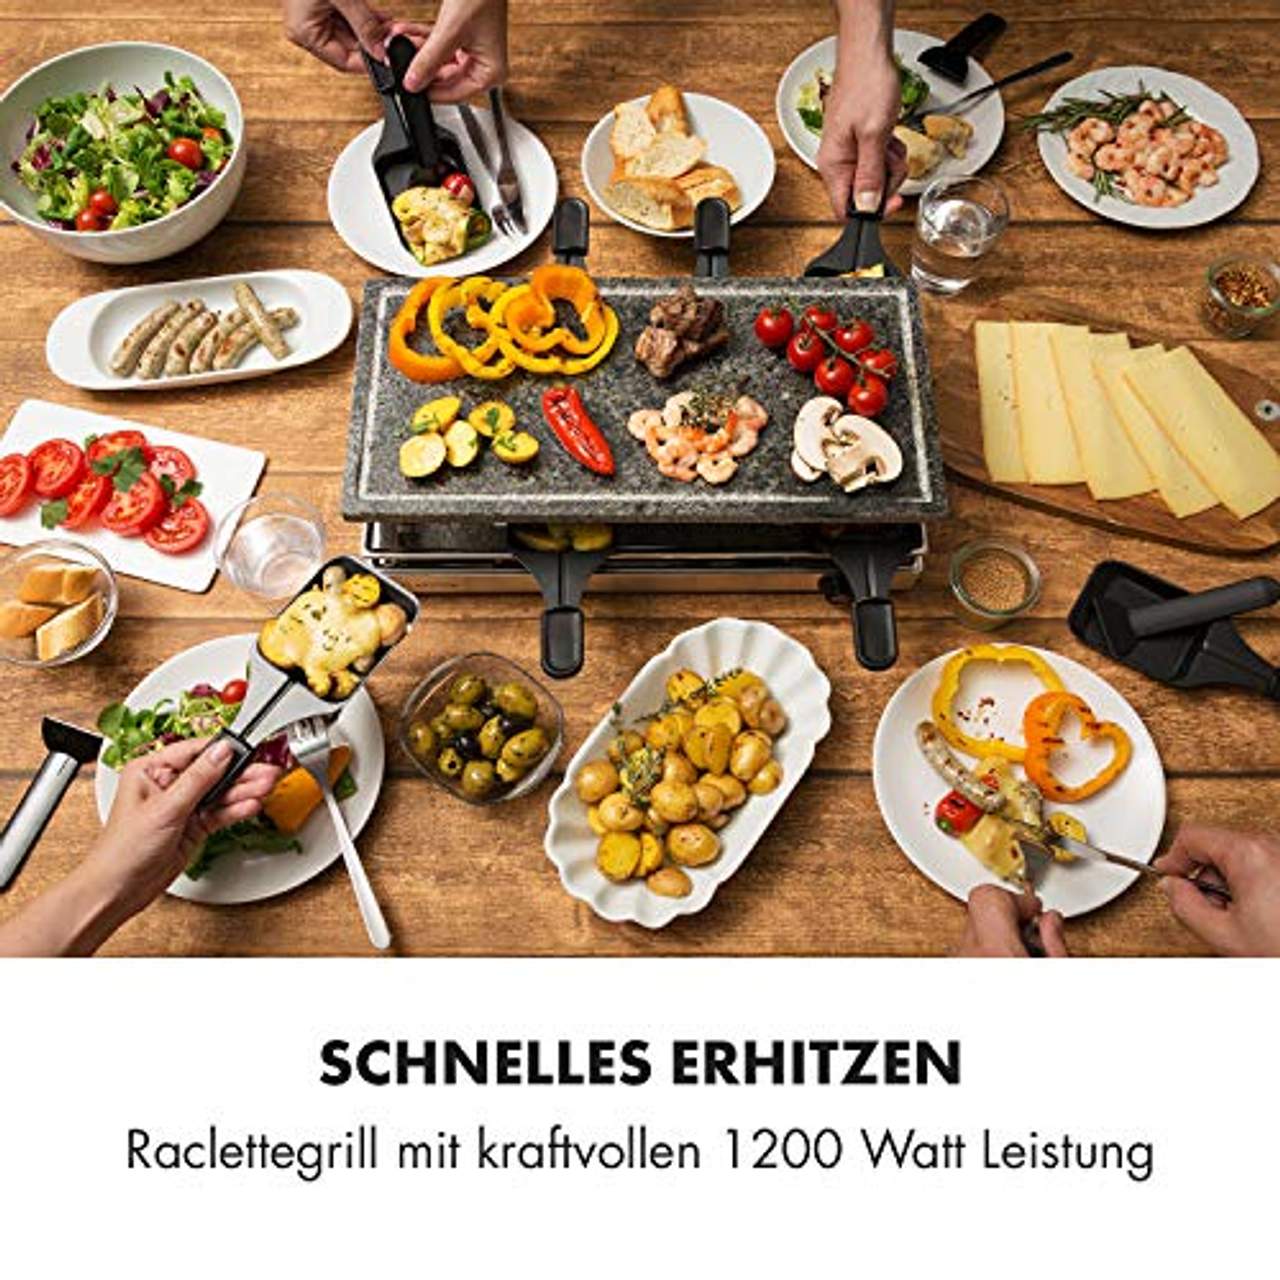 Klarstein Gourmette Raclette mit Naturstein-Platte